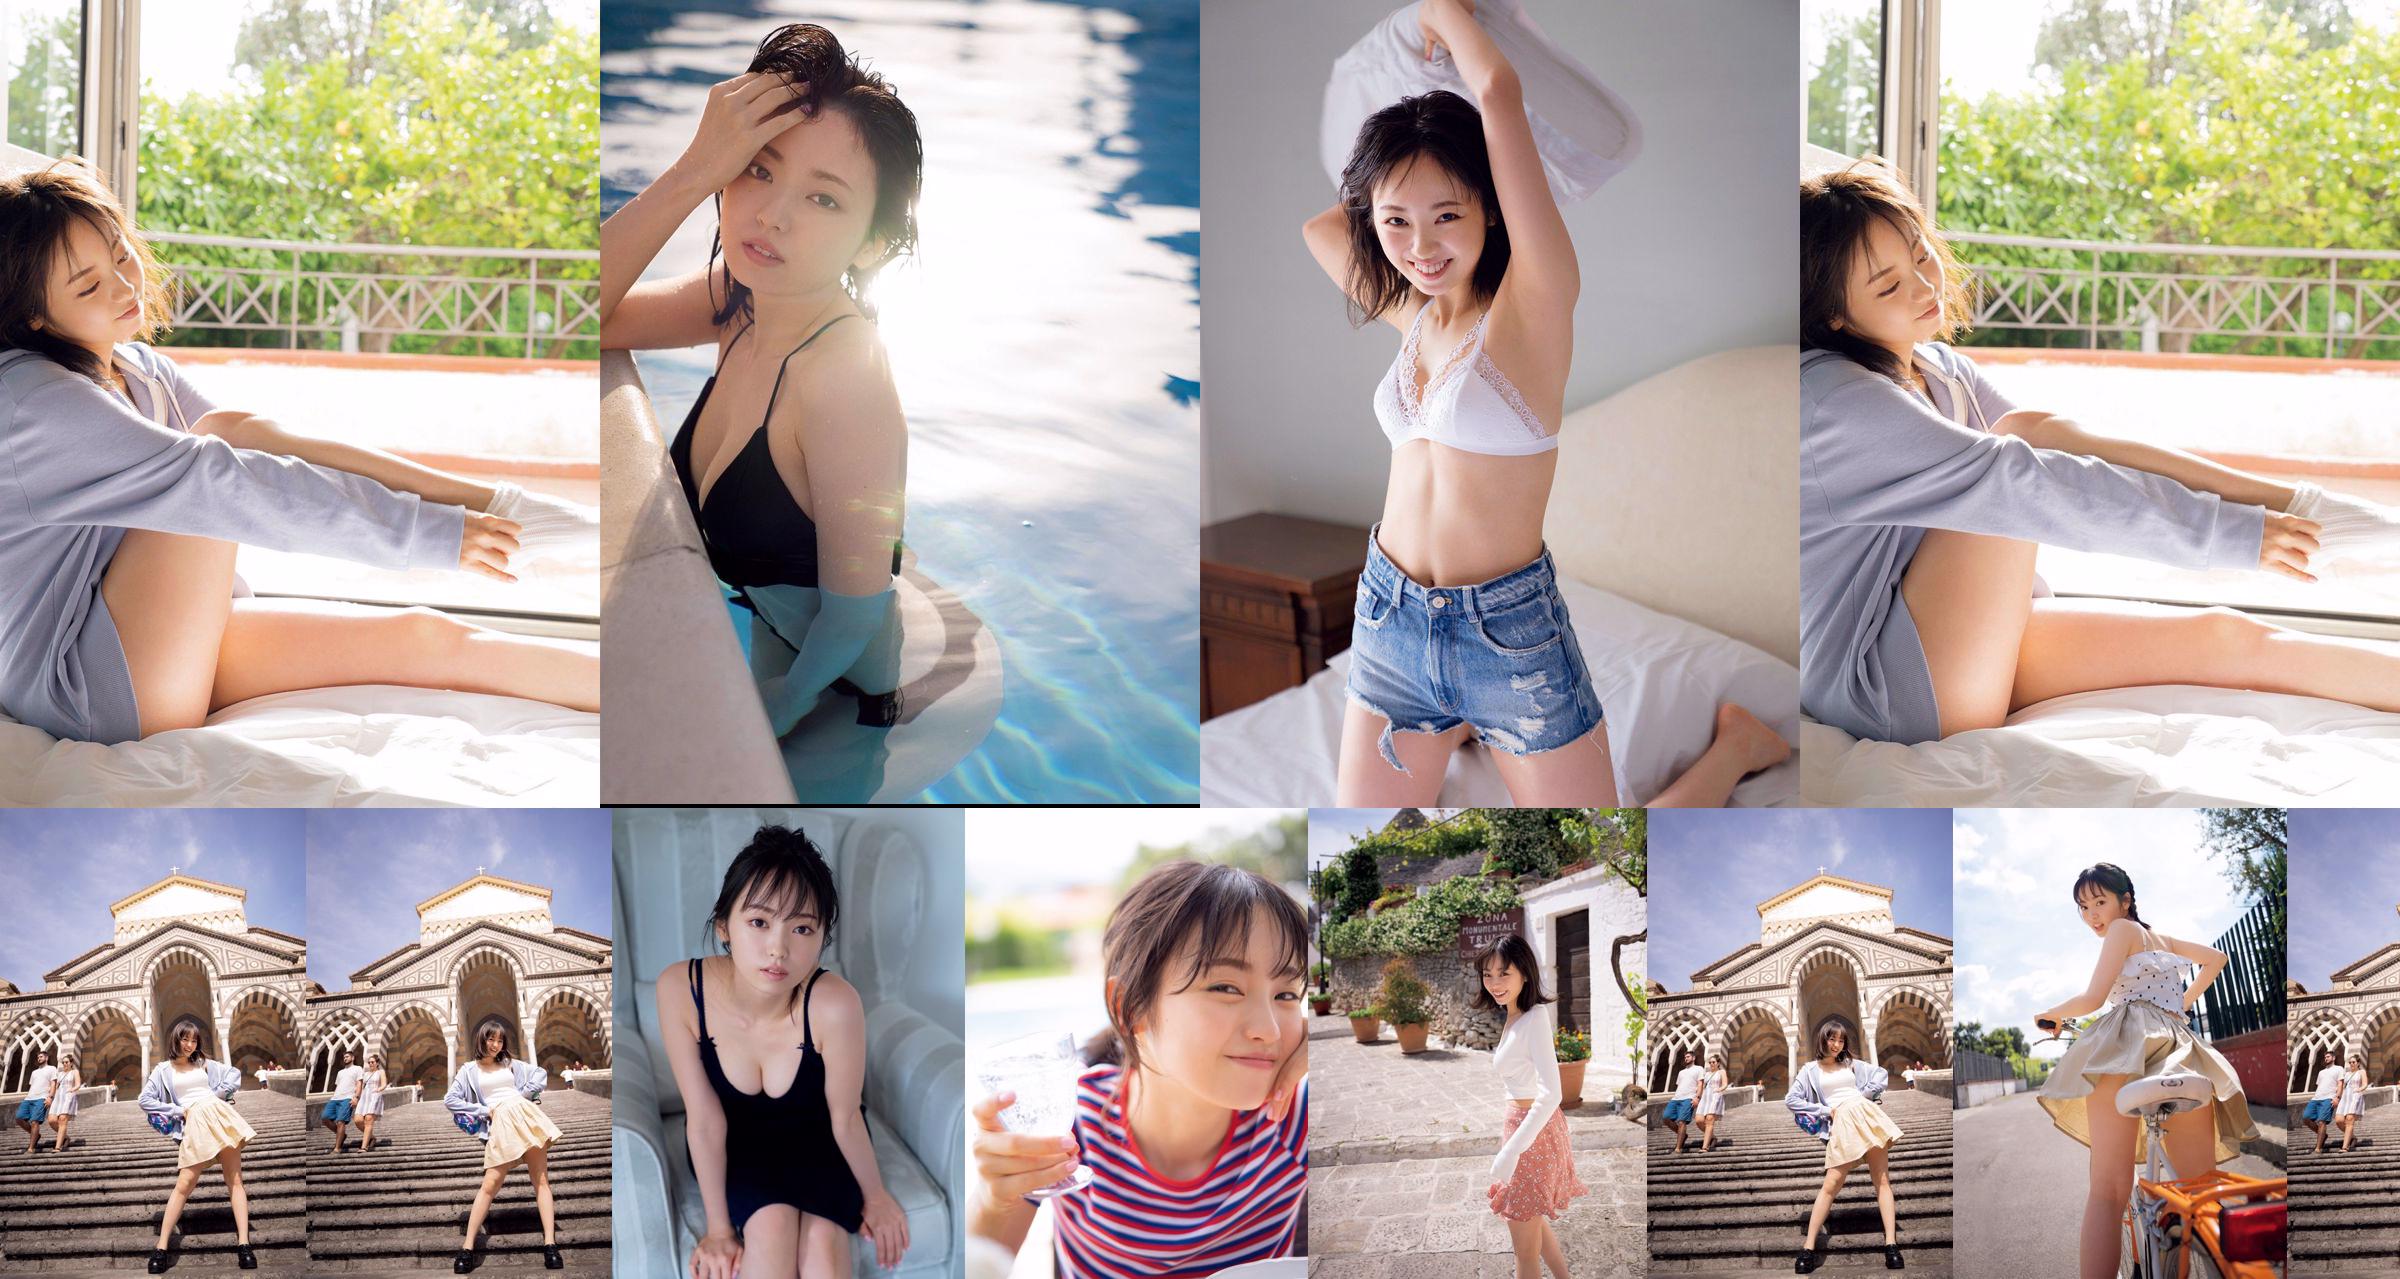 [VIERNES] Keyakizaka46, Yui Imaizumi "Traje de baño y lencería de" ¡Primero y último! "" Foto No.7368f1 Página 1